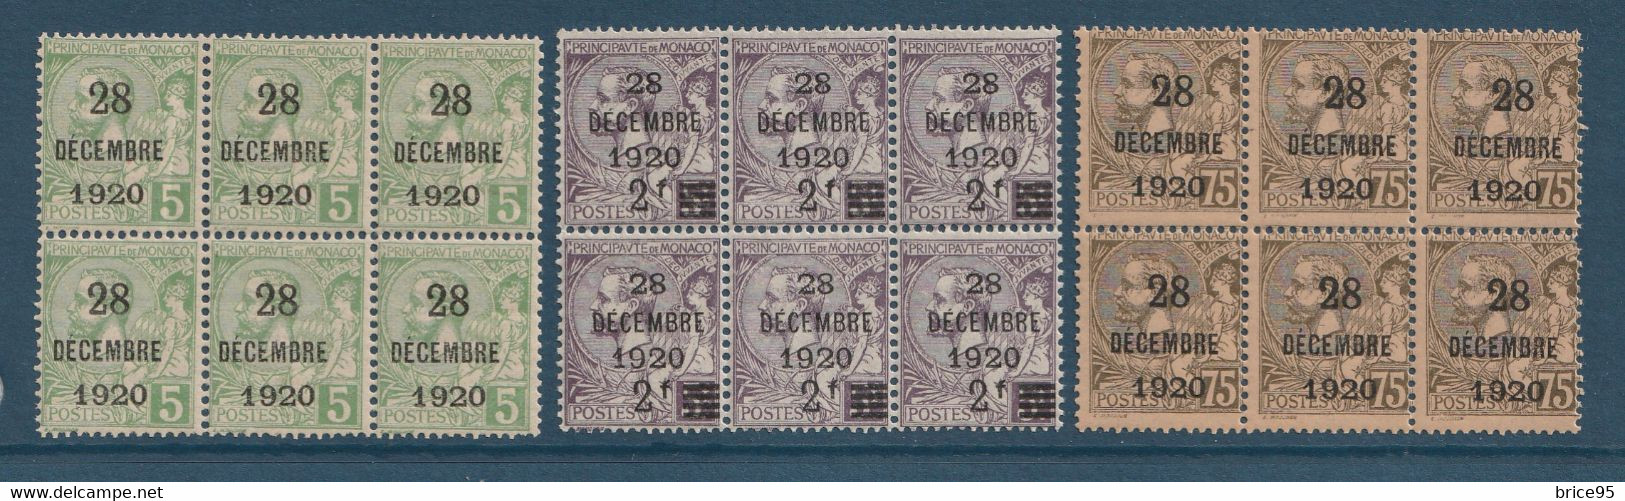 ⭐ Monaco - YT N° 48 à 50 - Neuf Avec Legère Adhérence - 1921 ⭐ - Unused Stamps